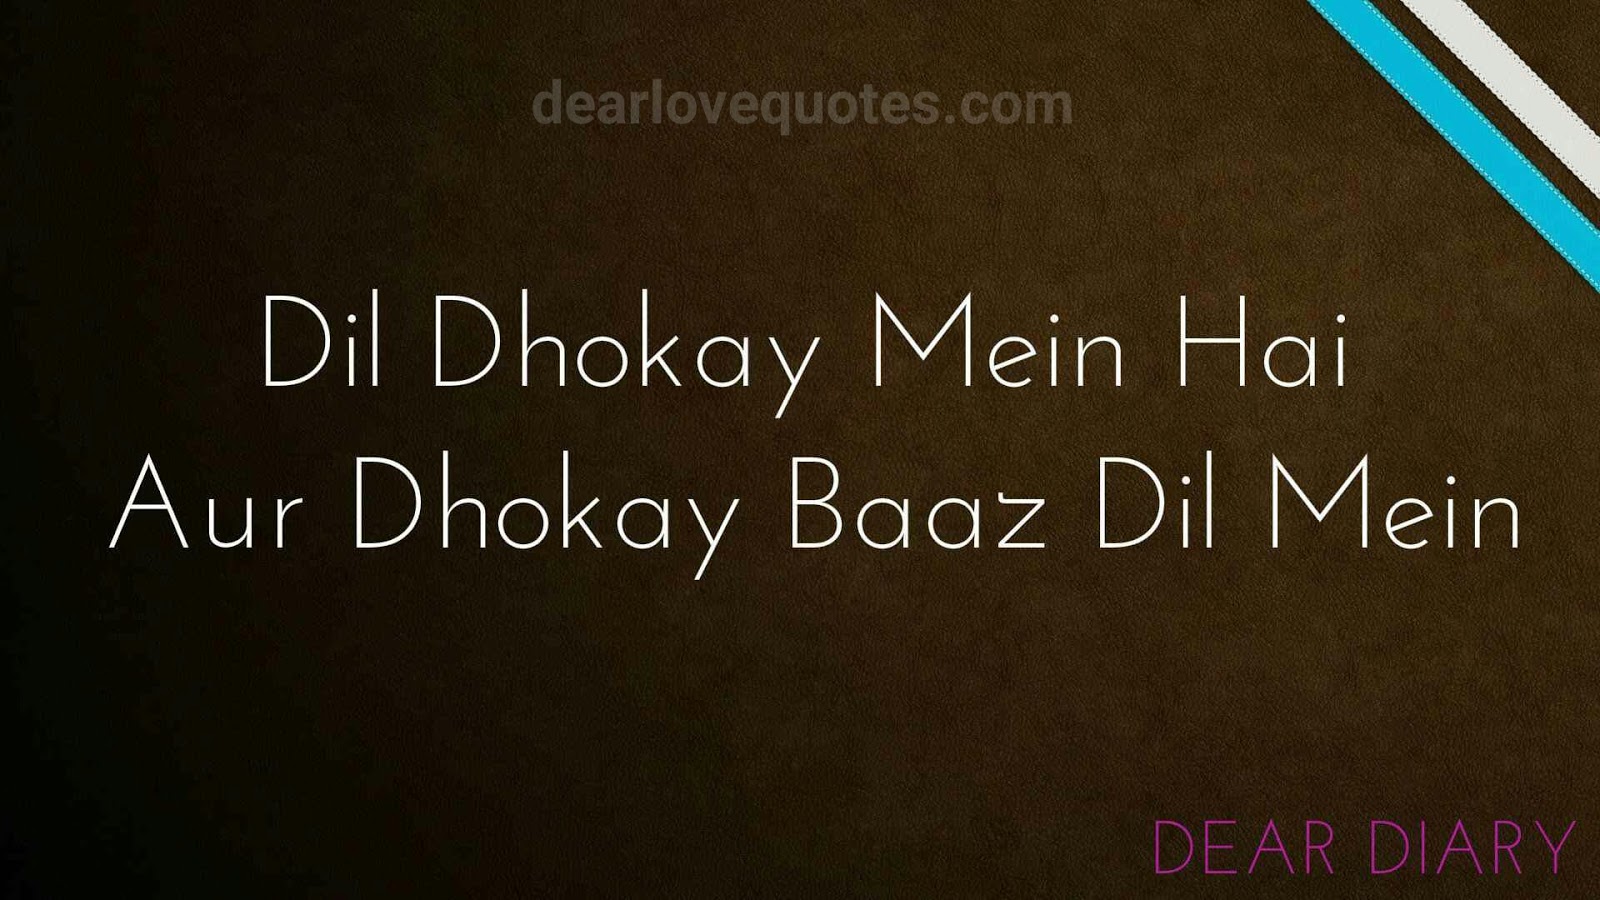 Dear Diary Se Images Shayari And Love Quotes-14 - Attitude Shayari Status , HD Wallpaper & Backgrounds